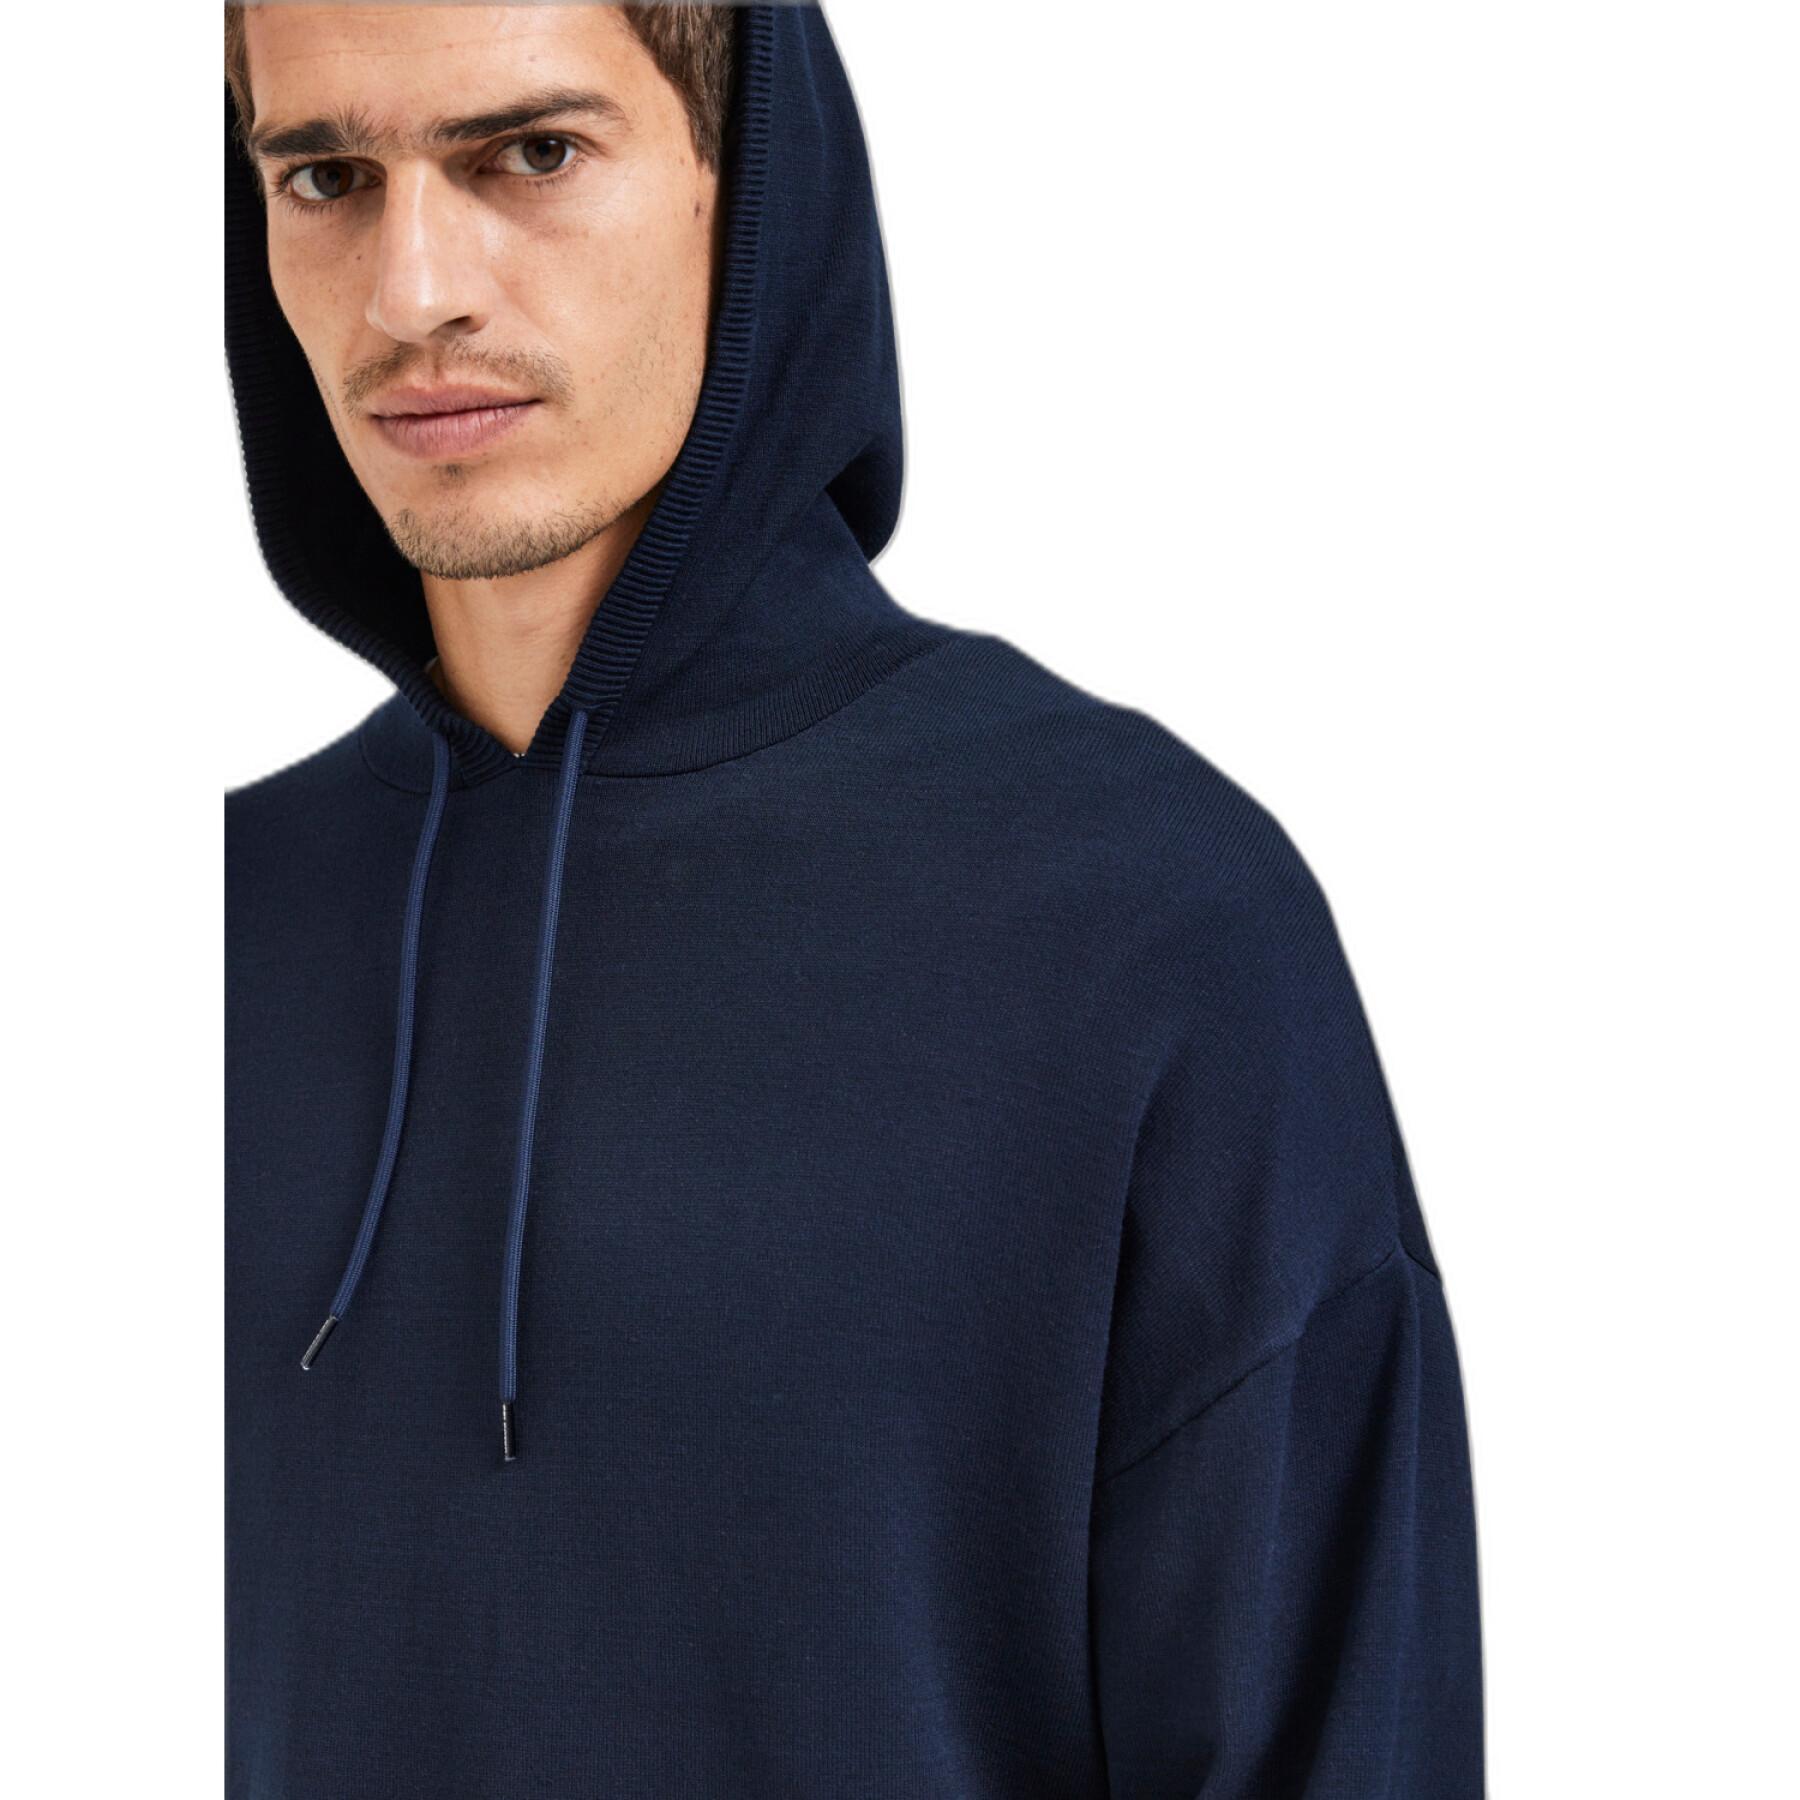 Hooded sweatshirt Selected Slhteller